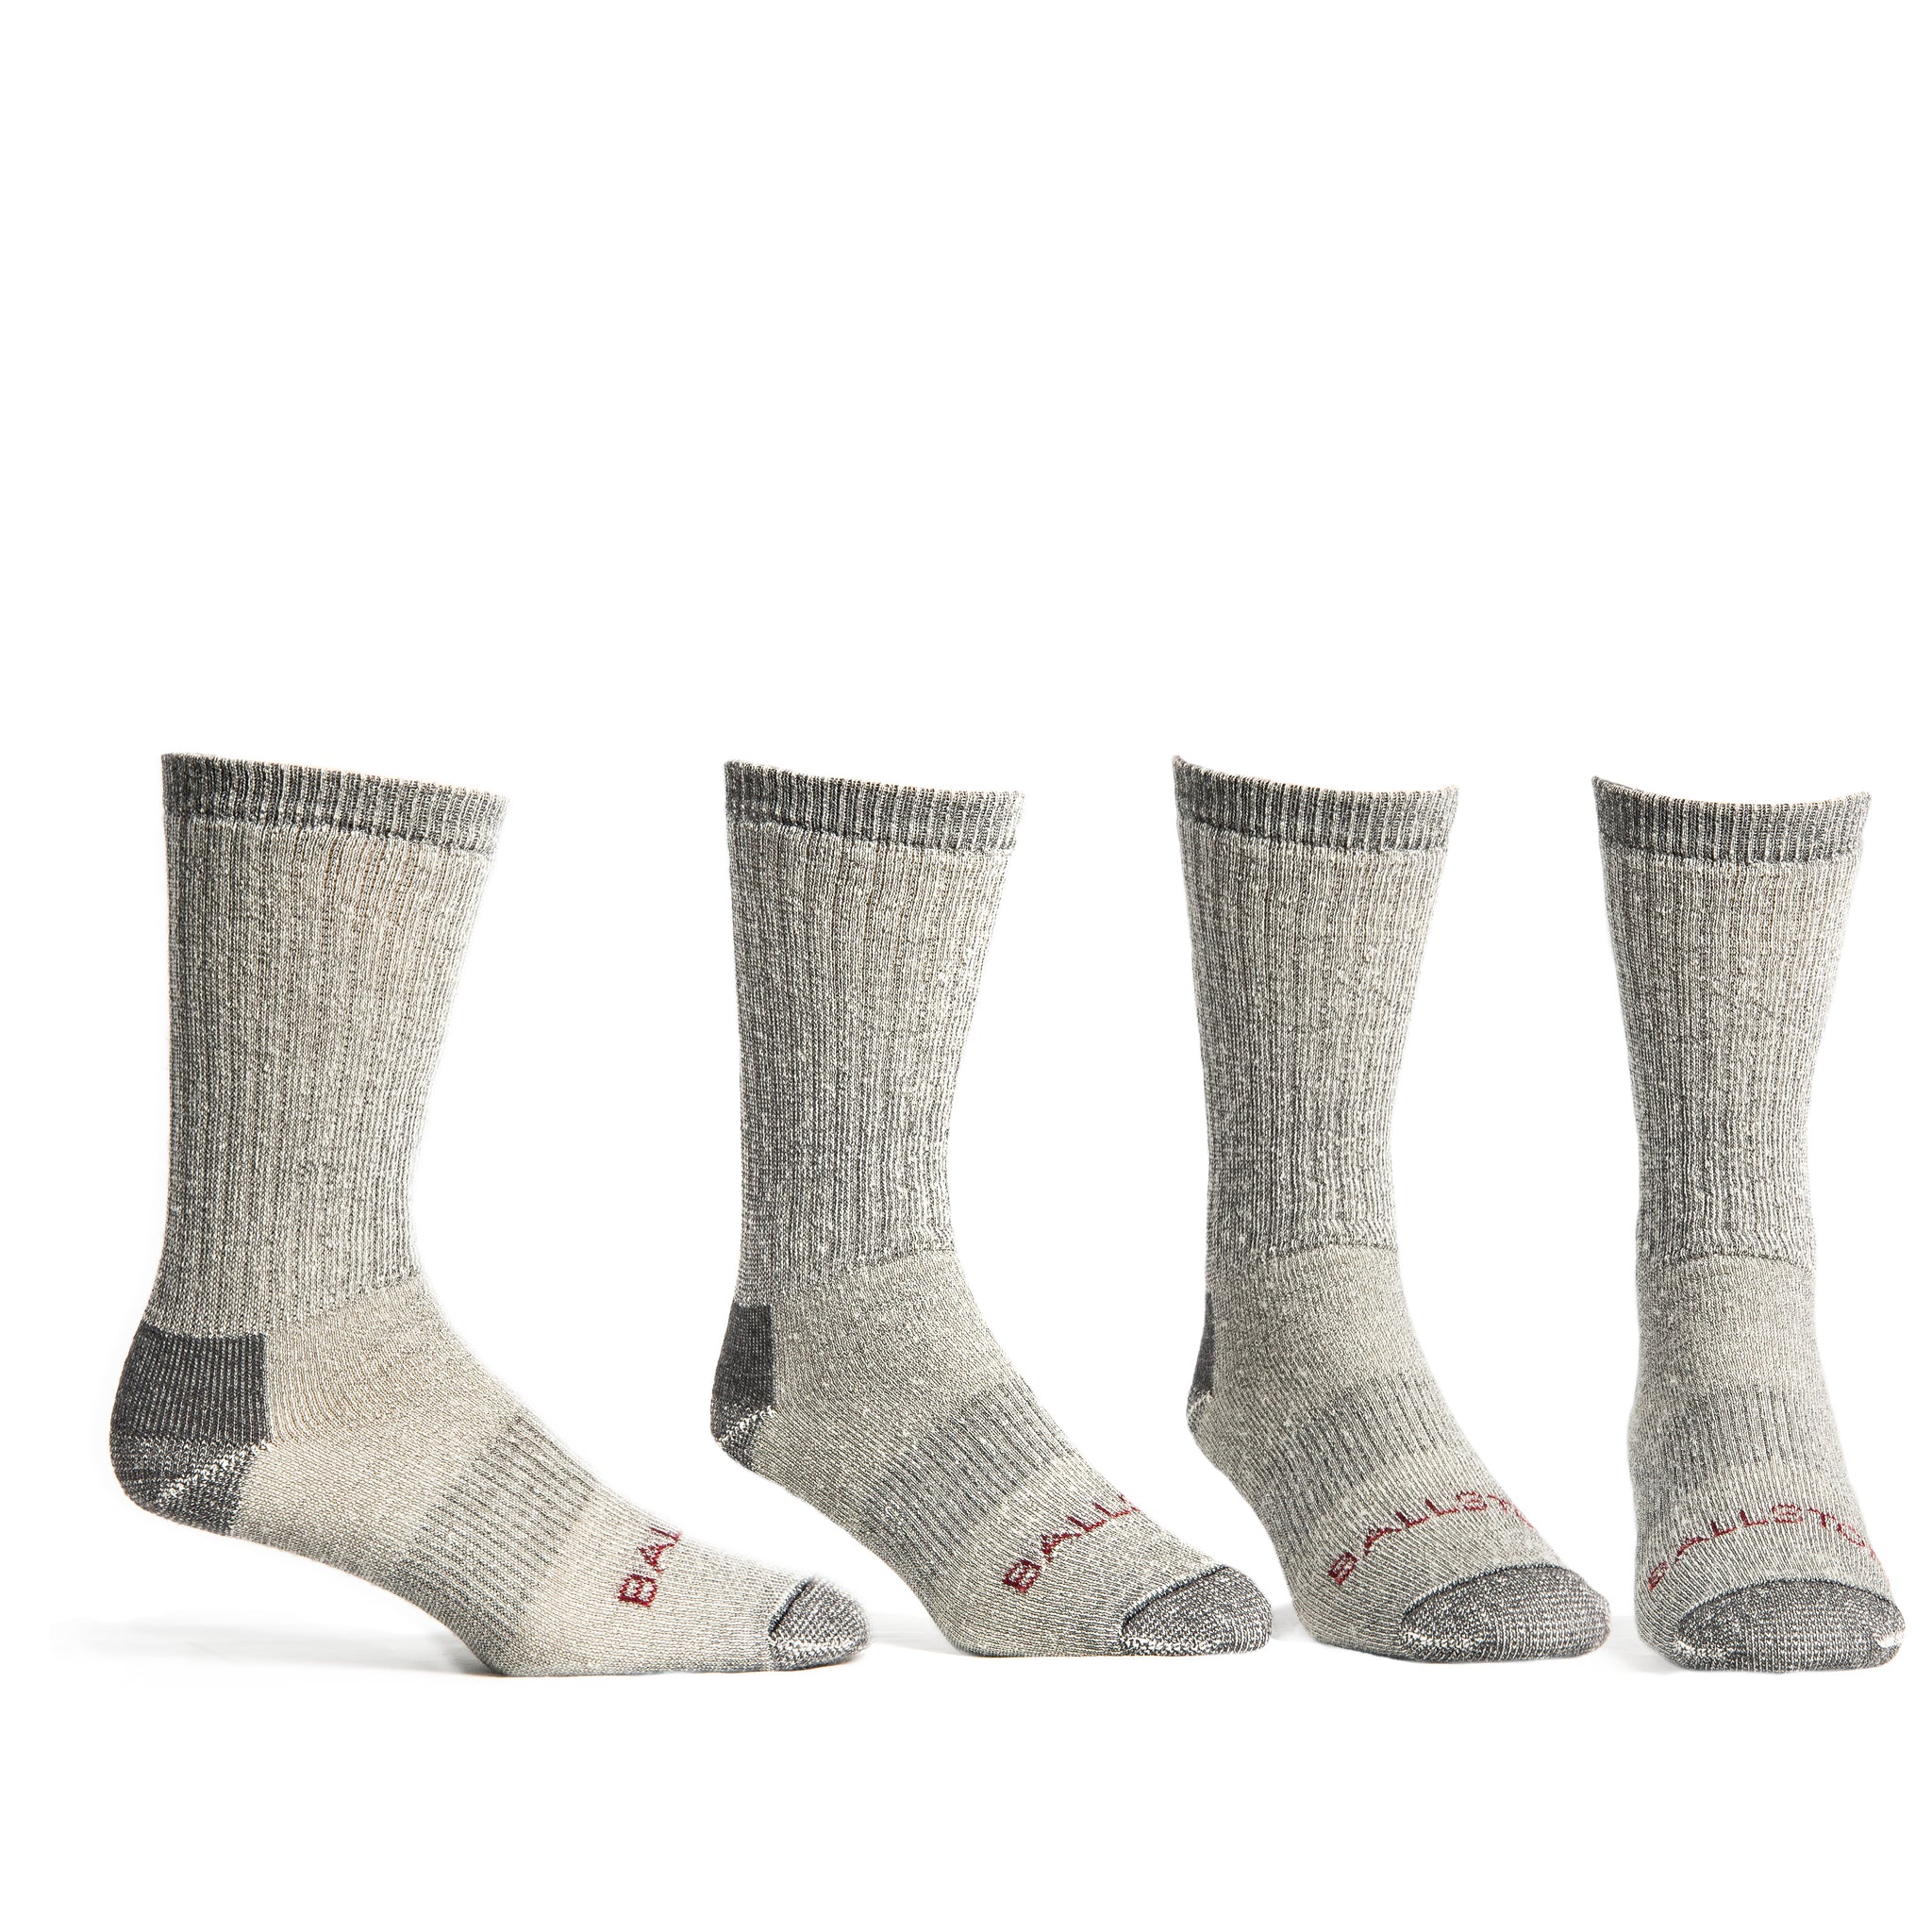 Ballston Medium Weight 86% Merino Wool Socks for Winter & Outdoor Hiking  and Trekking - 4 Pairs for Men and Women